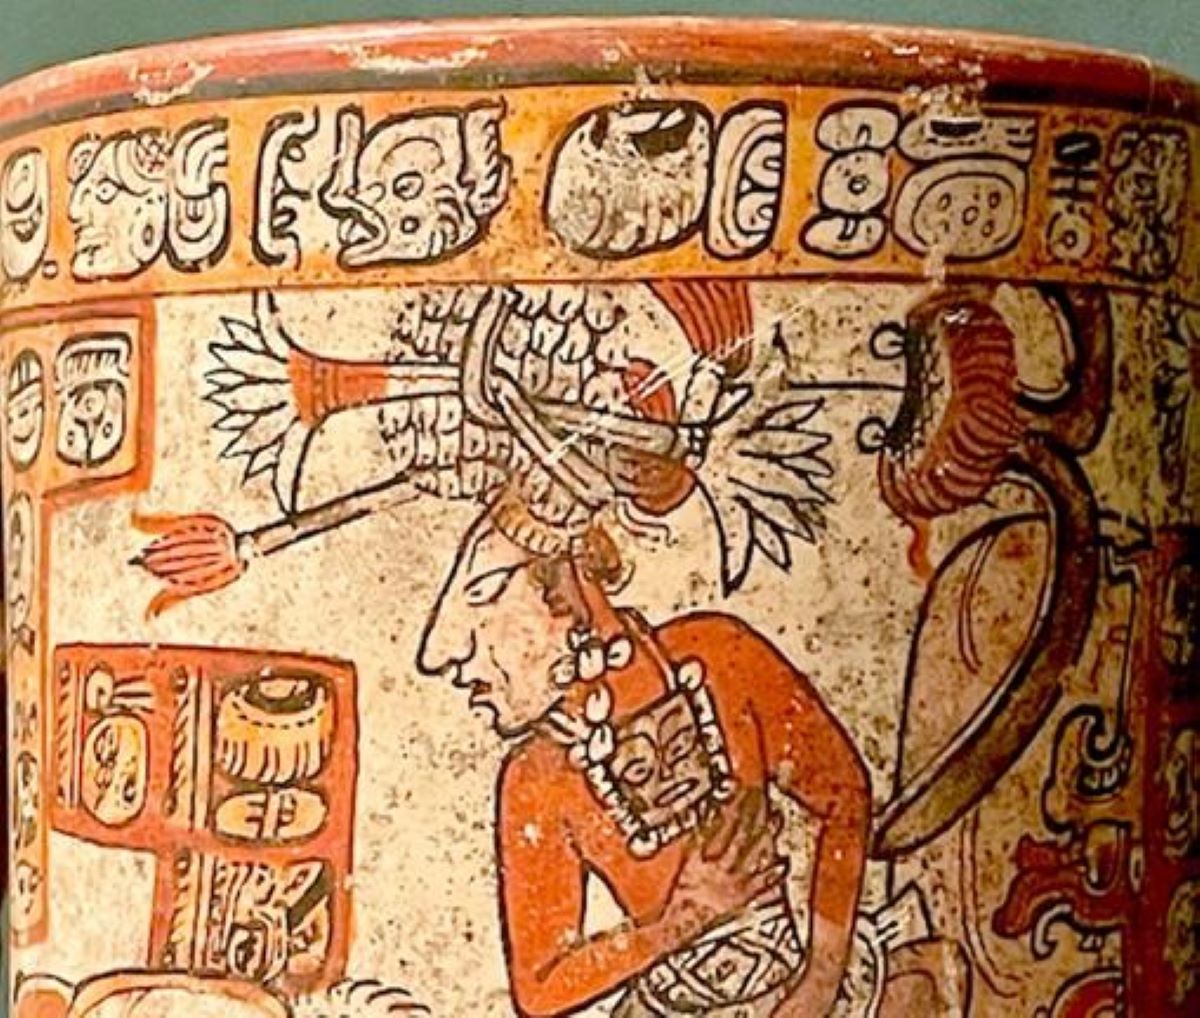 Les anciens rois mayas nous ont peut-être déjà expliqué comment résoudre notre crise de l’eau